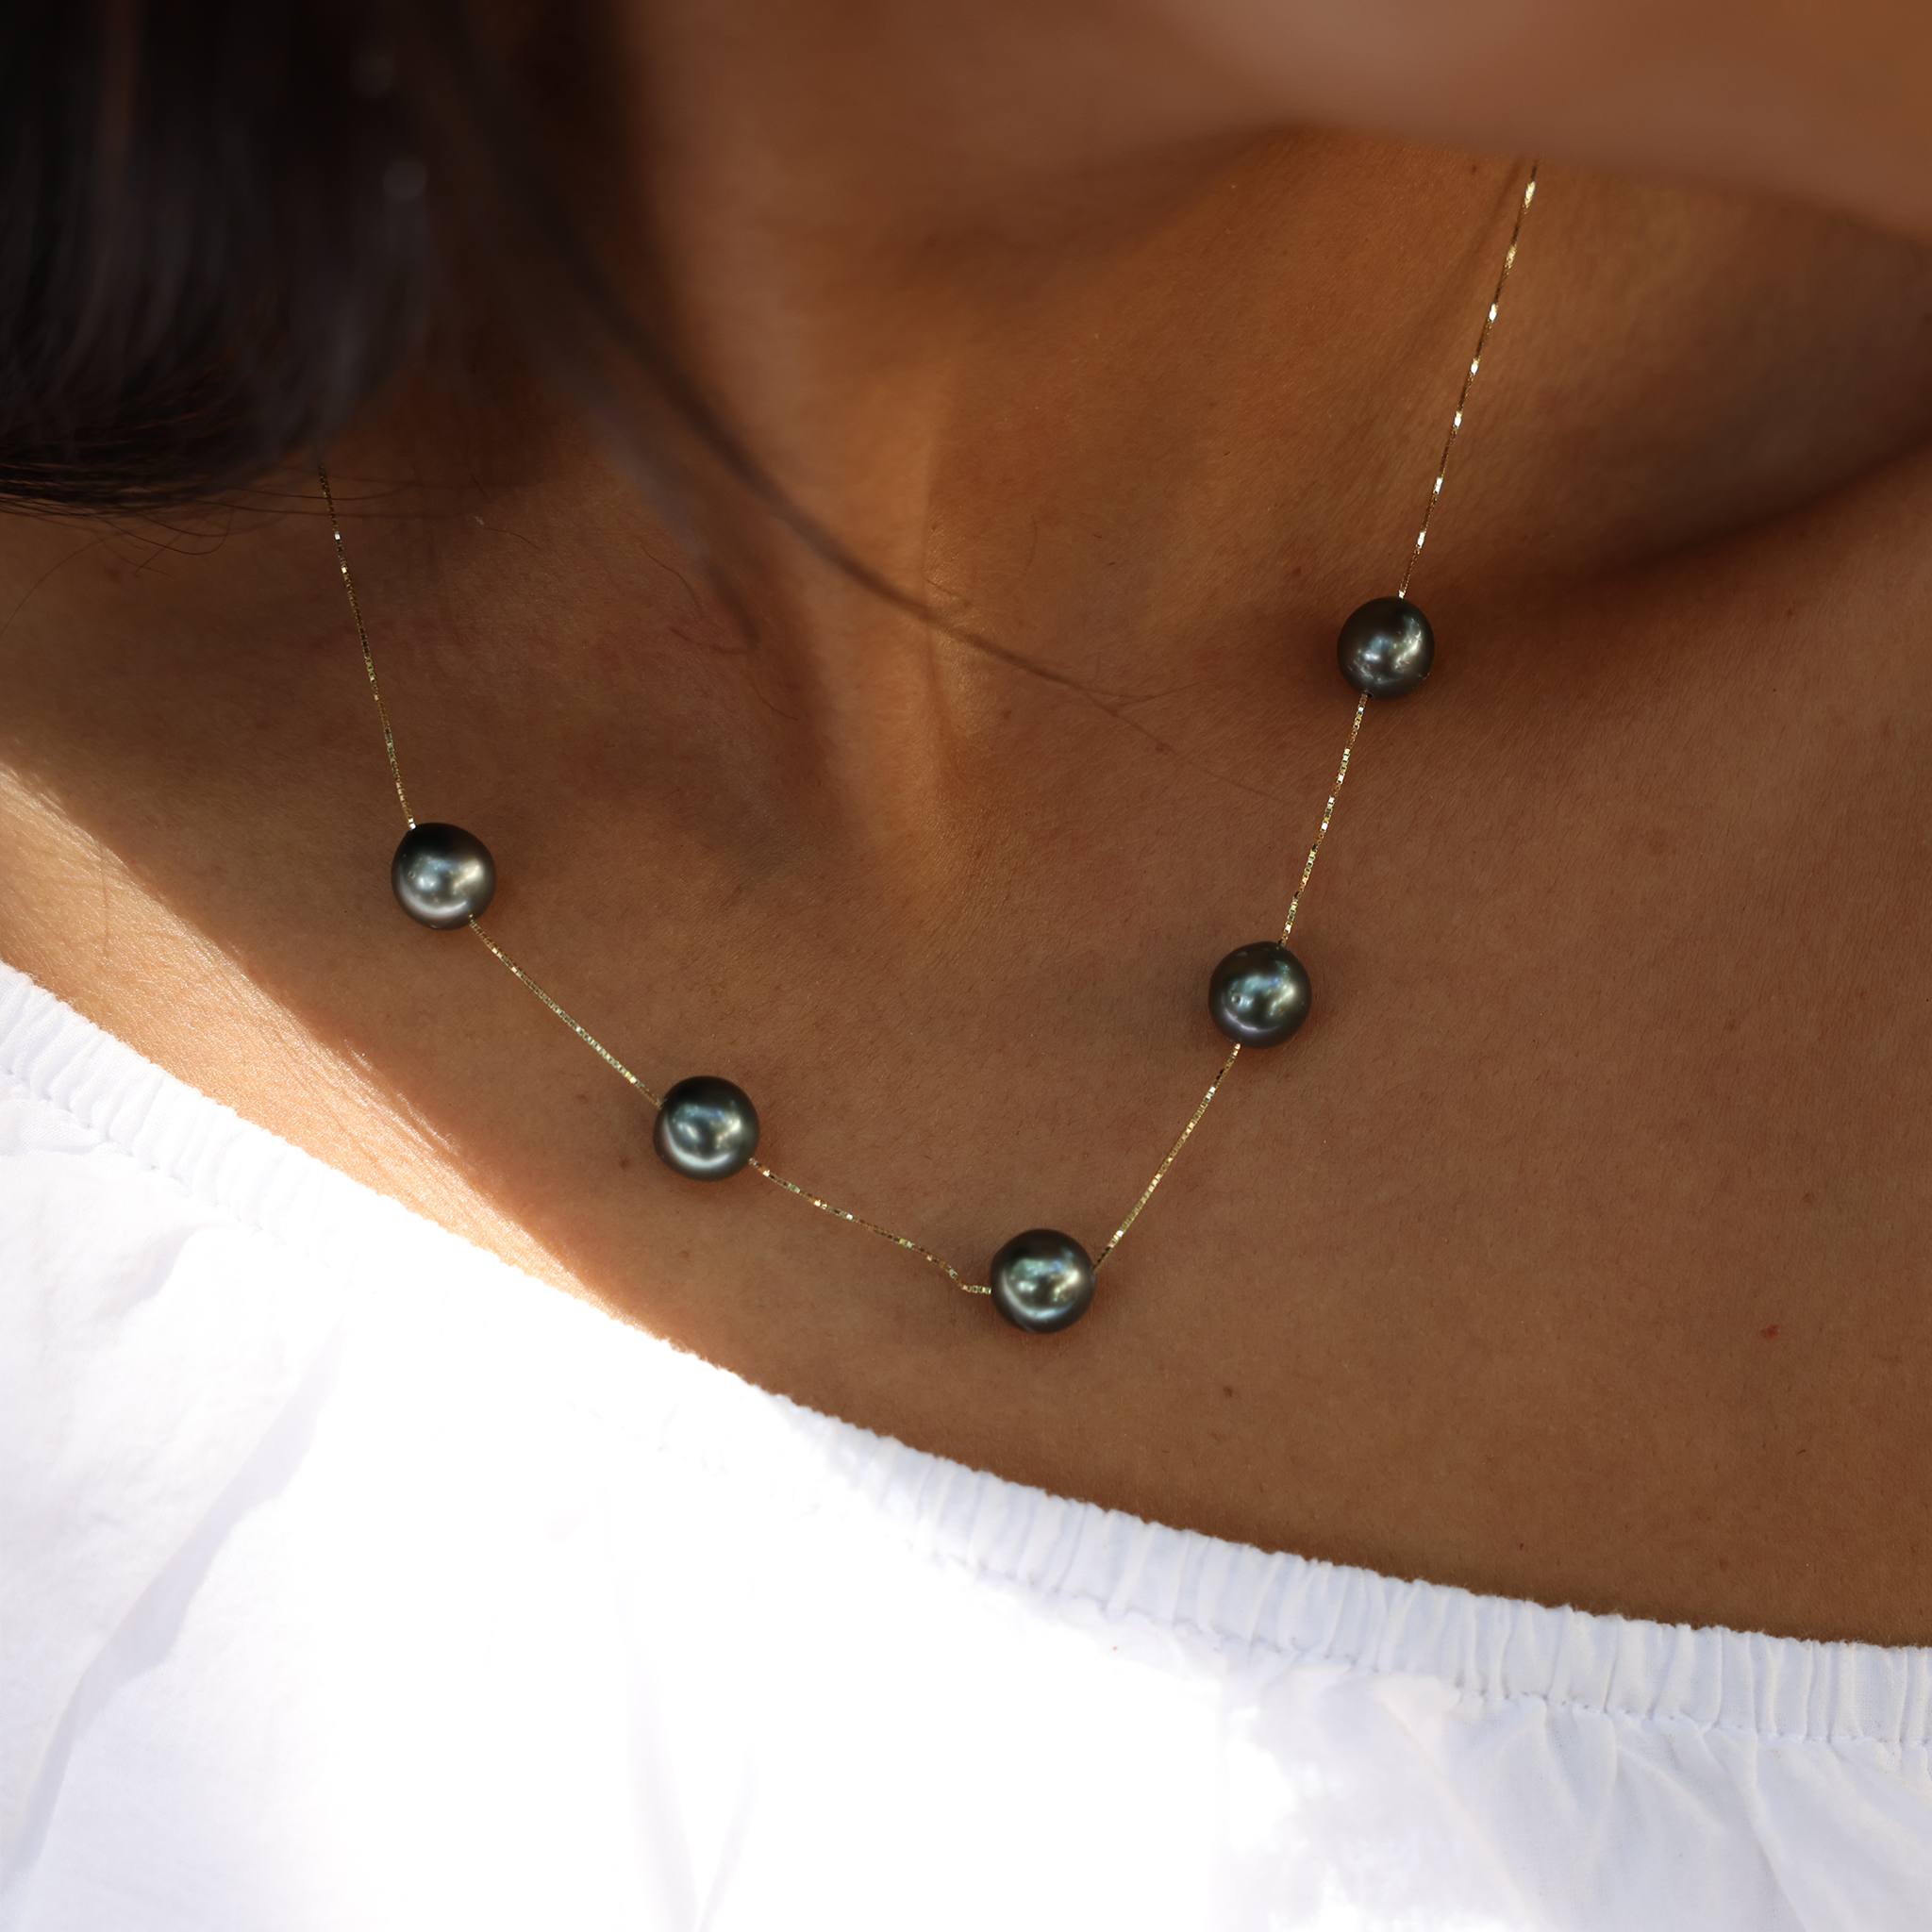 18 "Collier de perle flottant noir tahitien en or - 9-10 mm